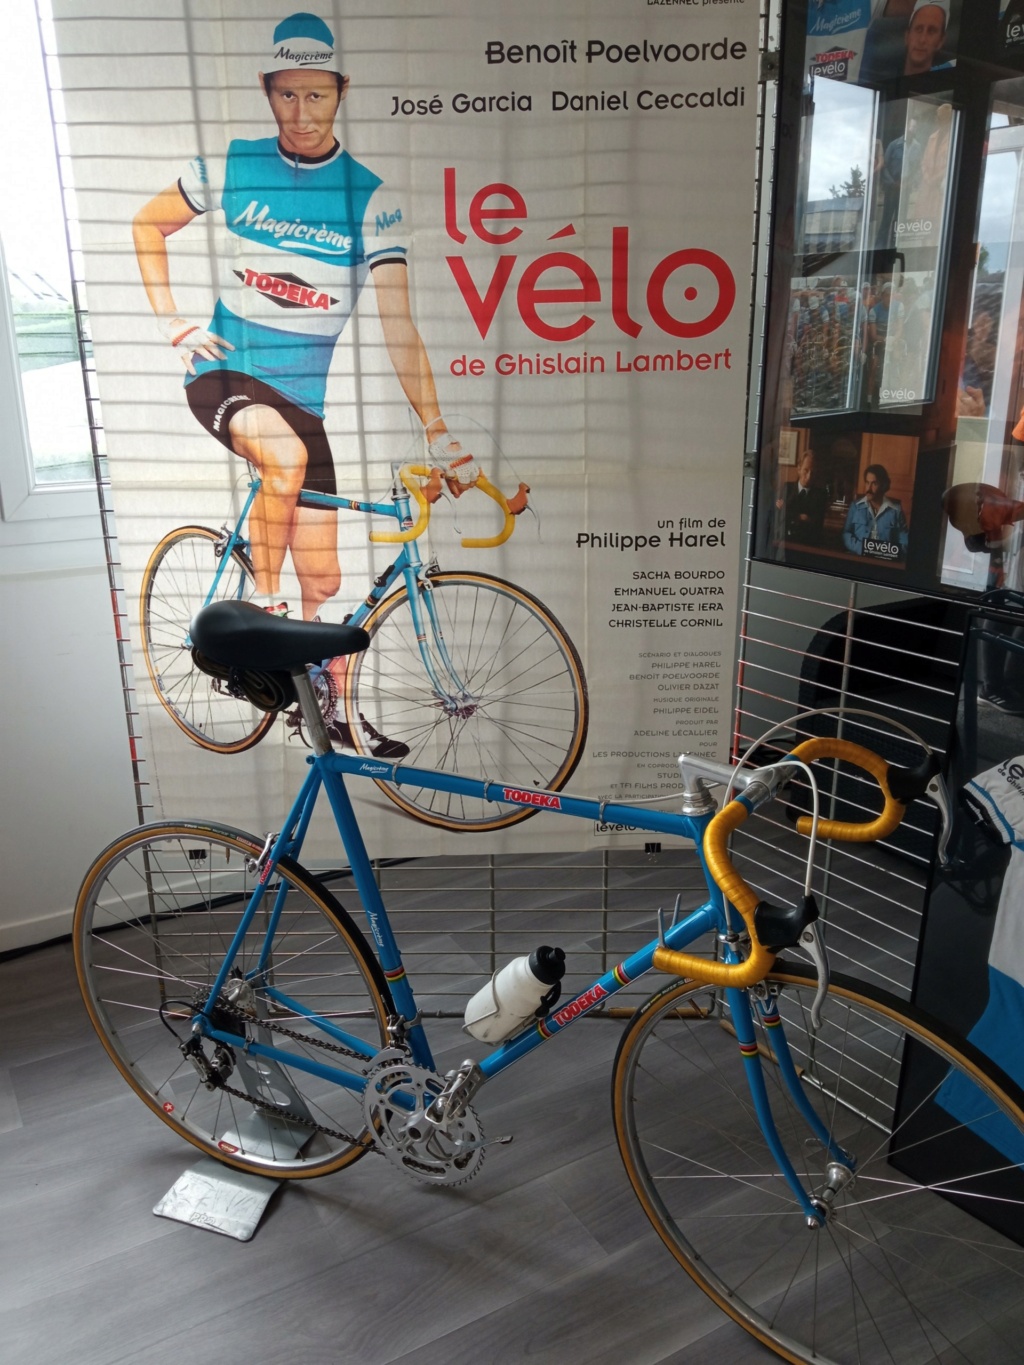 velo - Vélo en Yveline 133